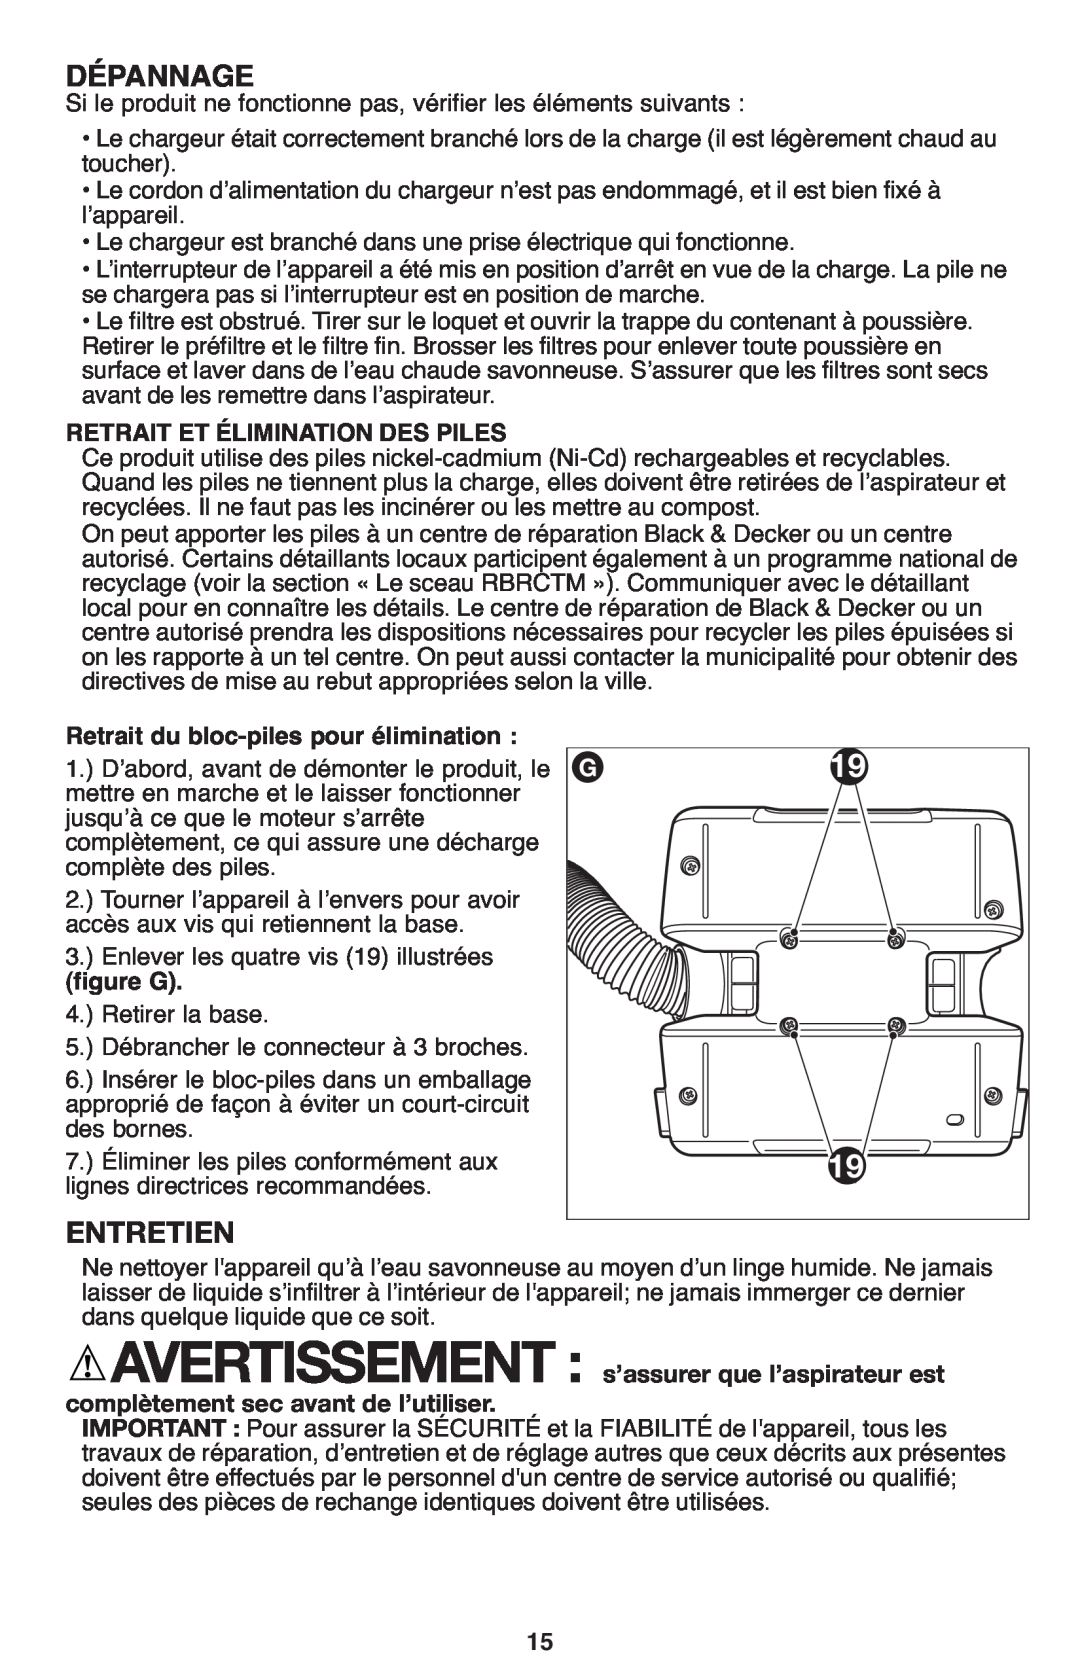 Black & Decker FHV1200 manual Dépannage, Retrait Et Élimination Des Piles, Retrait du bloc-piles pour élimination, figure G 